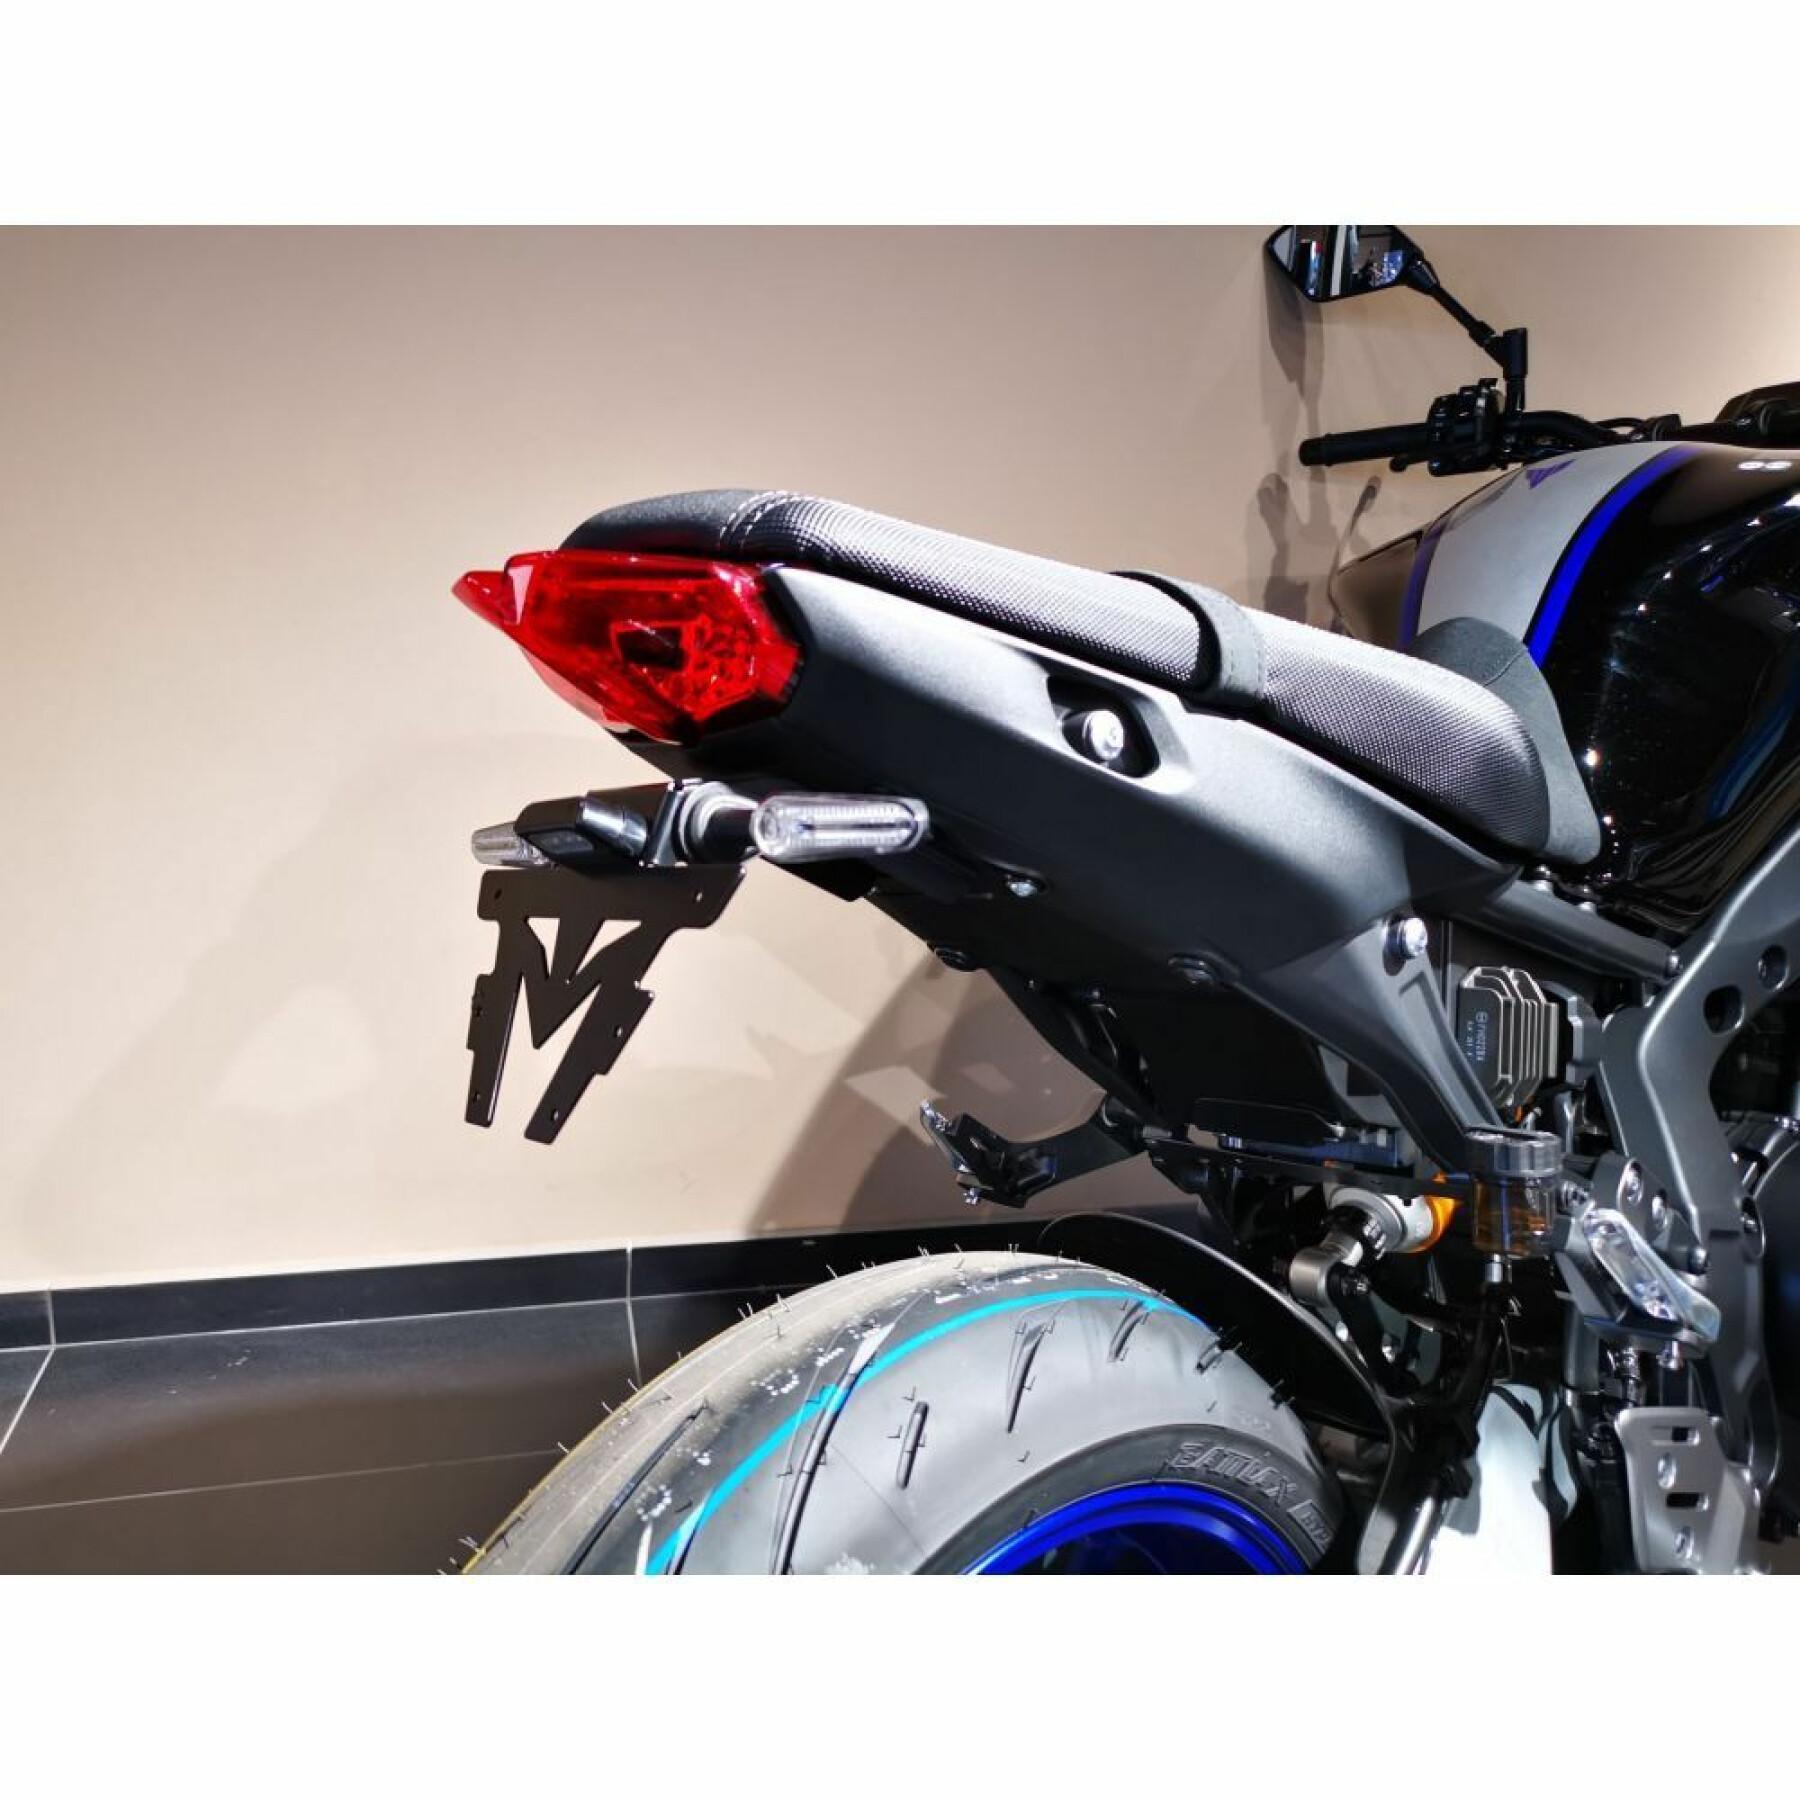 Motorcycle plate BtoB Moto Mt-09, Mt-09 Sp 2021-2022